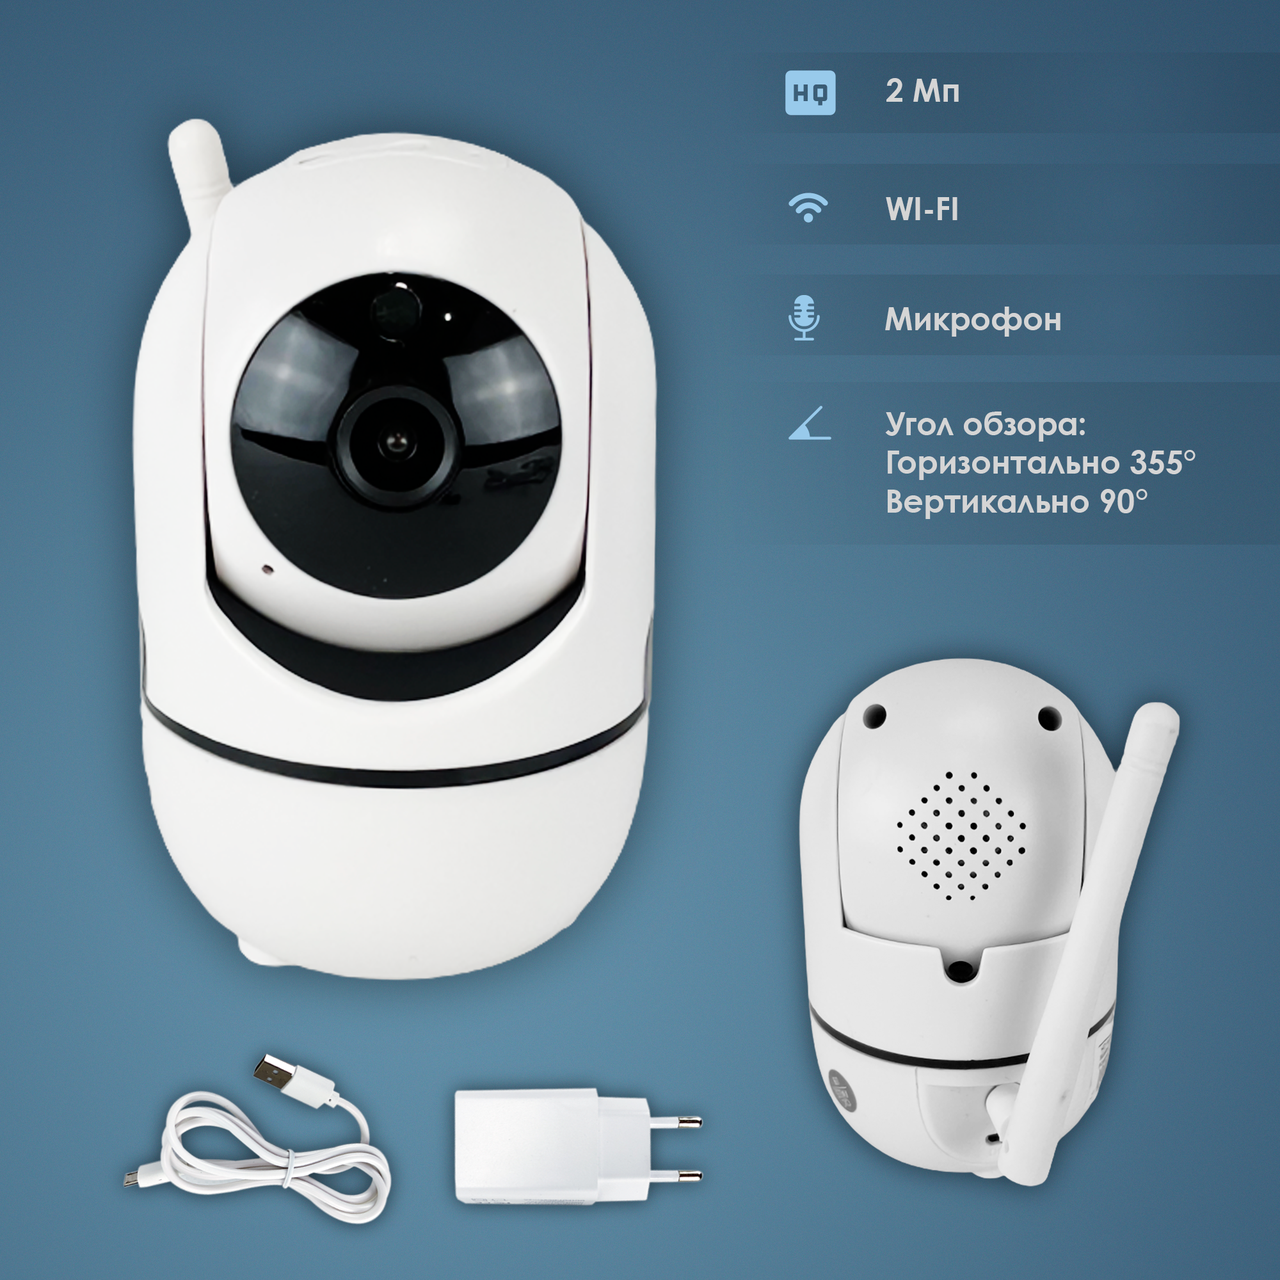 IP камера відеоспостереження WiFi YG13 для будинку поворотна вай фай p2p smart